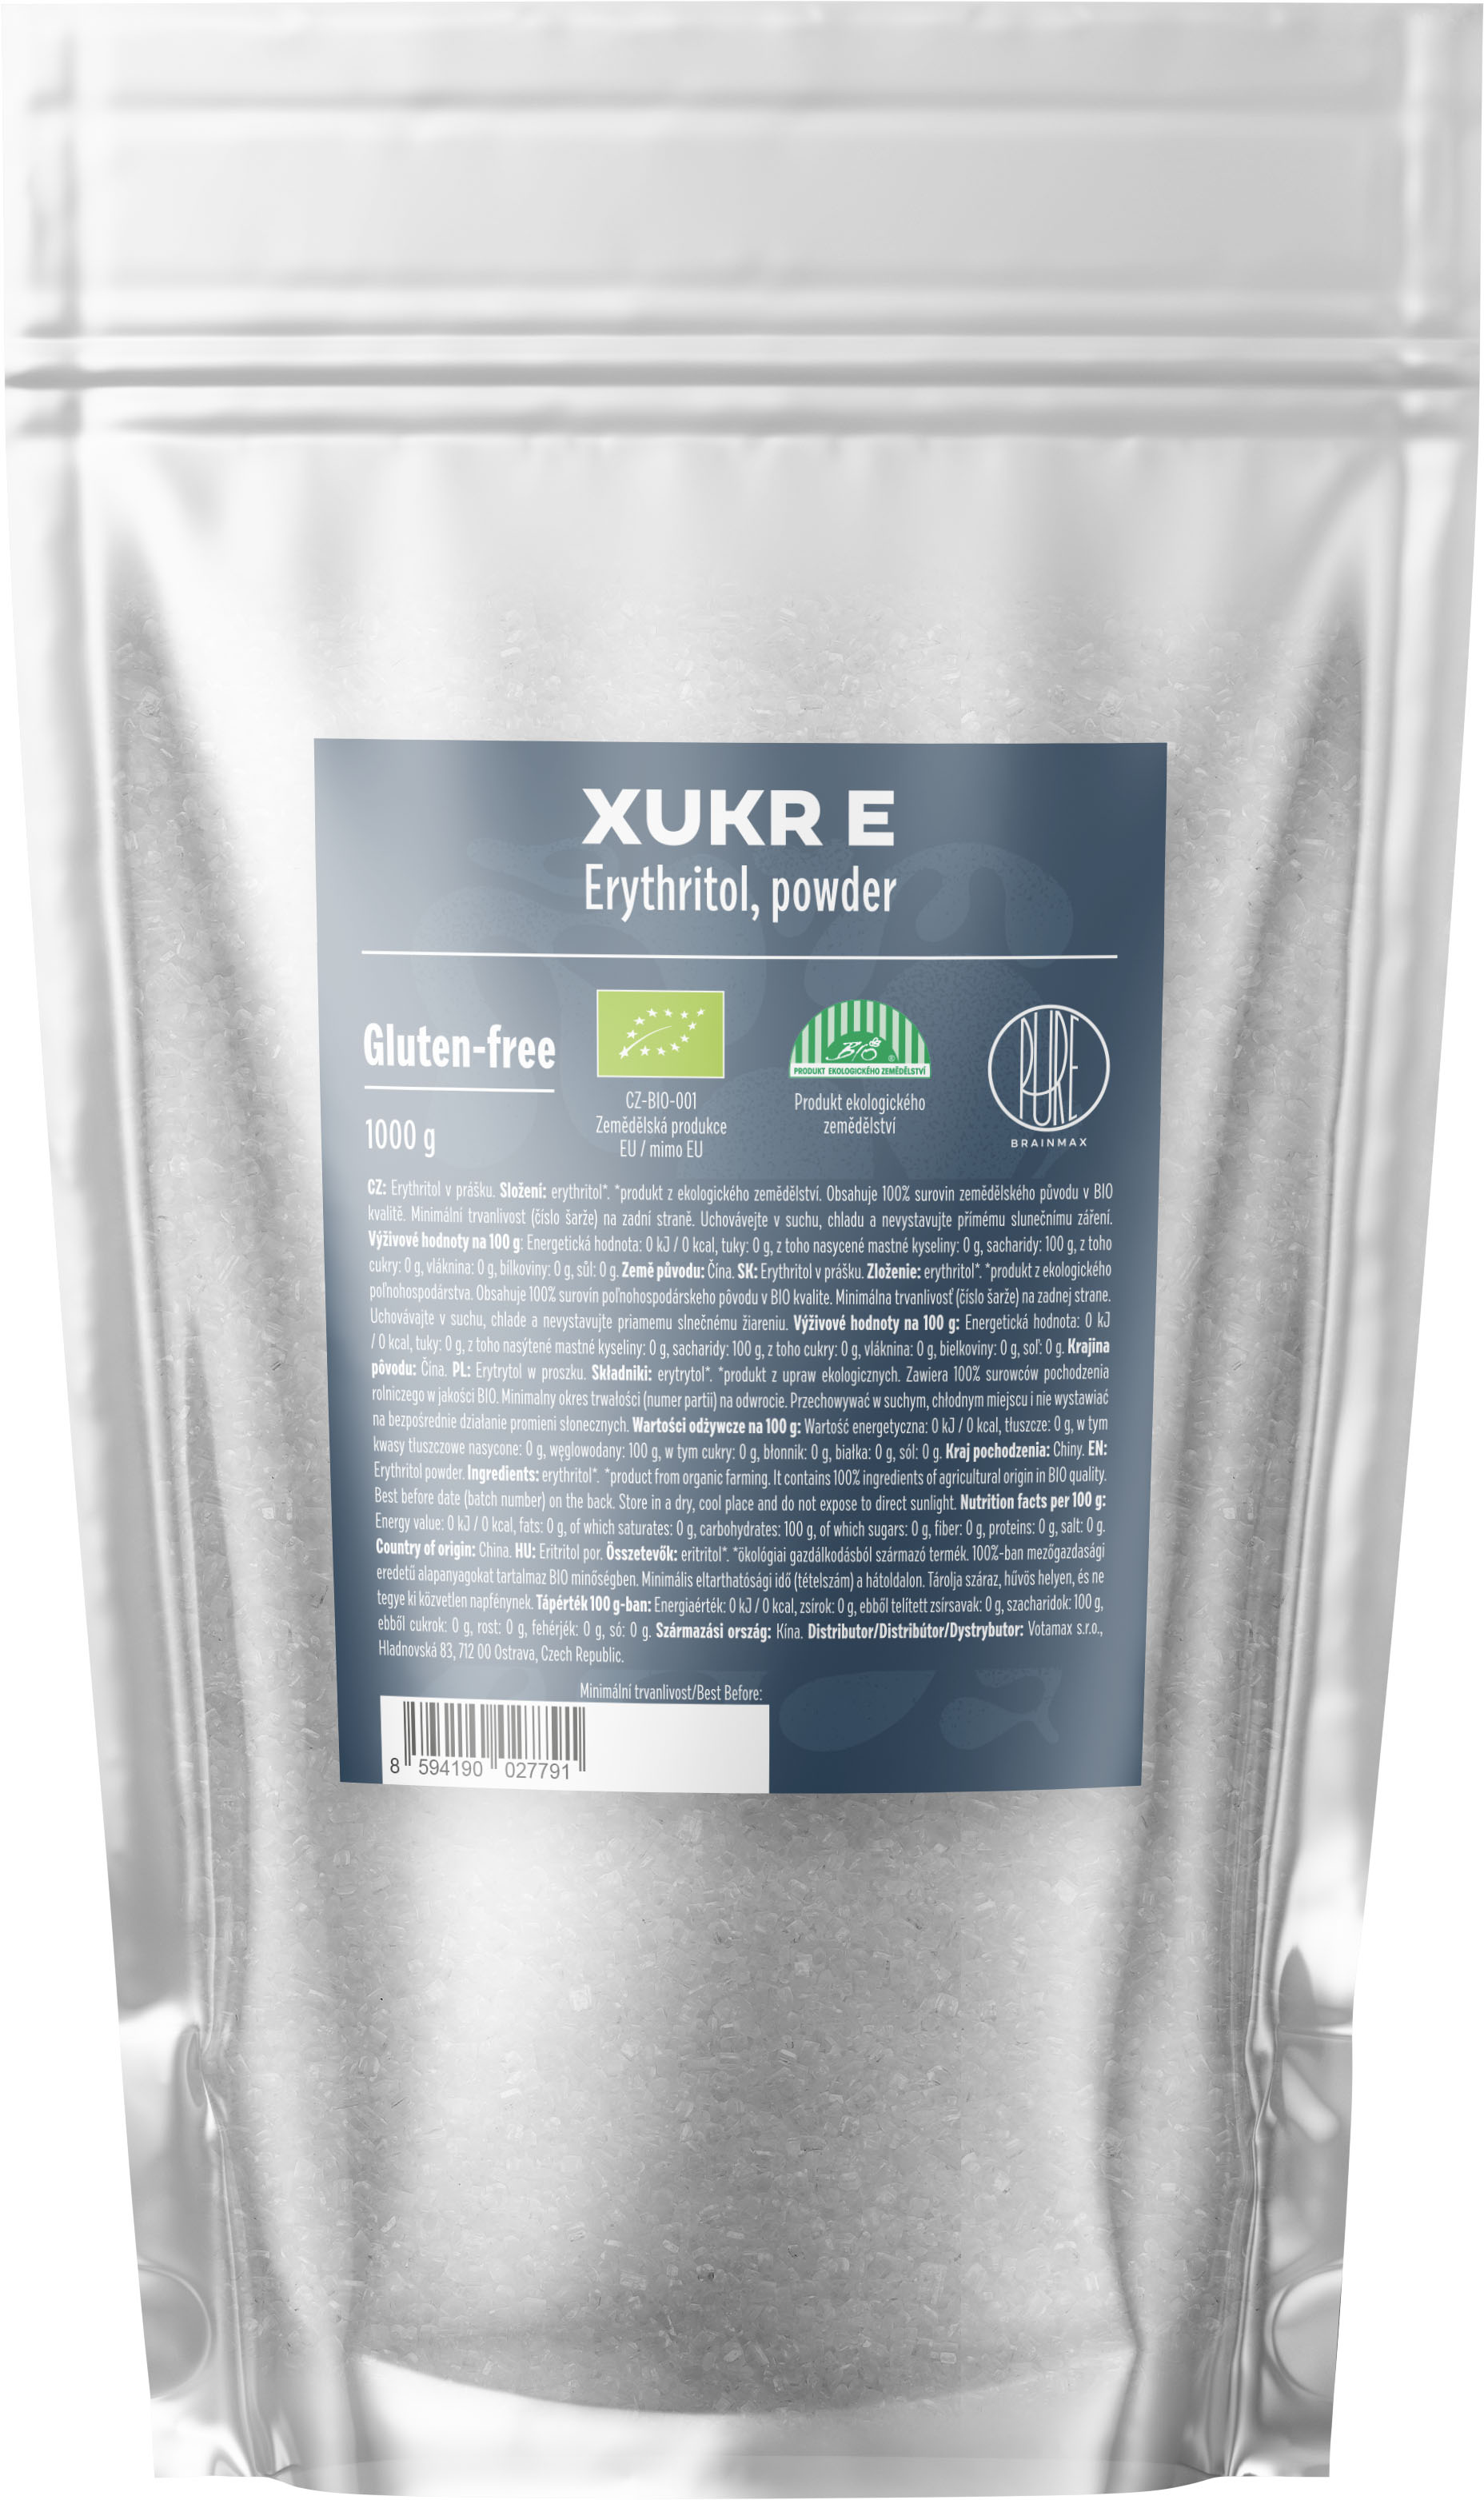 BrainMax Pure Xukr E, erythritol, BIO, 1 kg *CZ-BIO-001 certifikát *CZ-BIO-001 certifikát